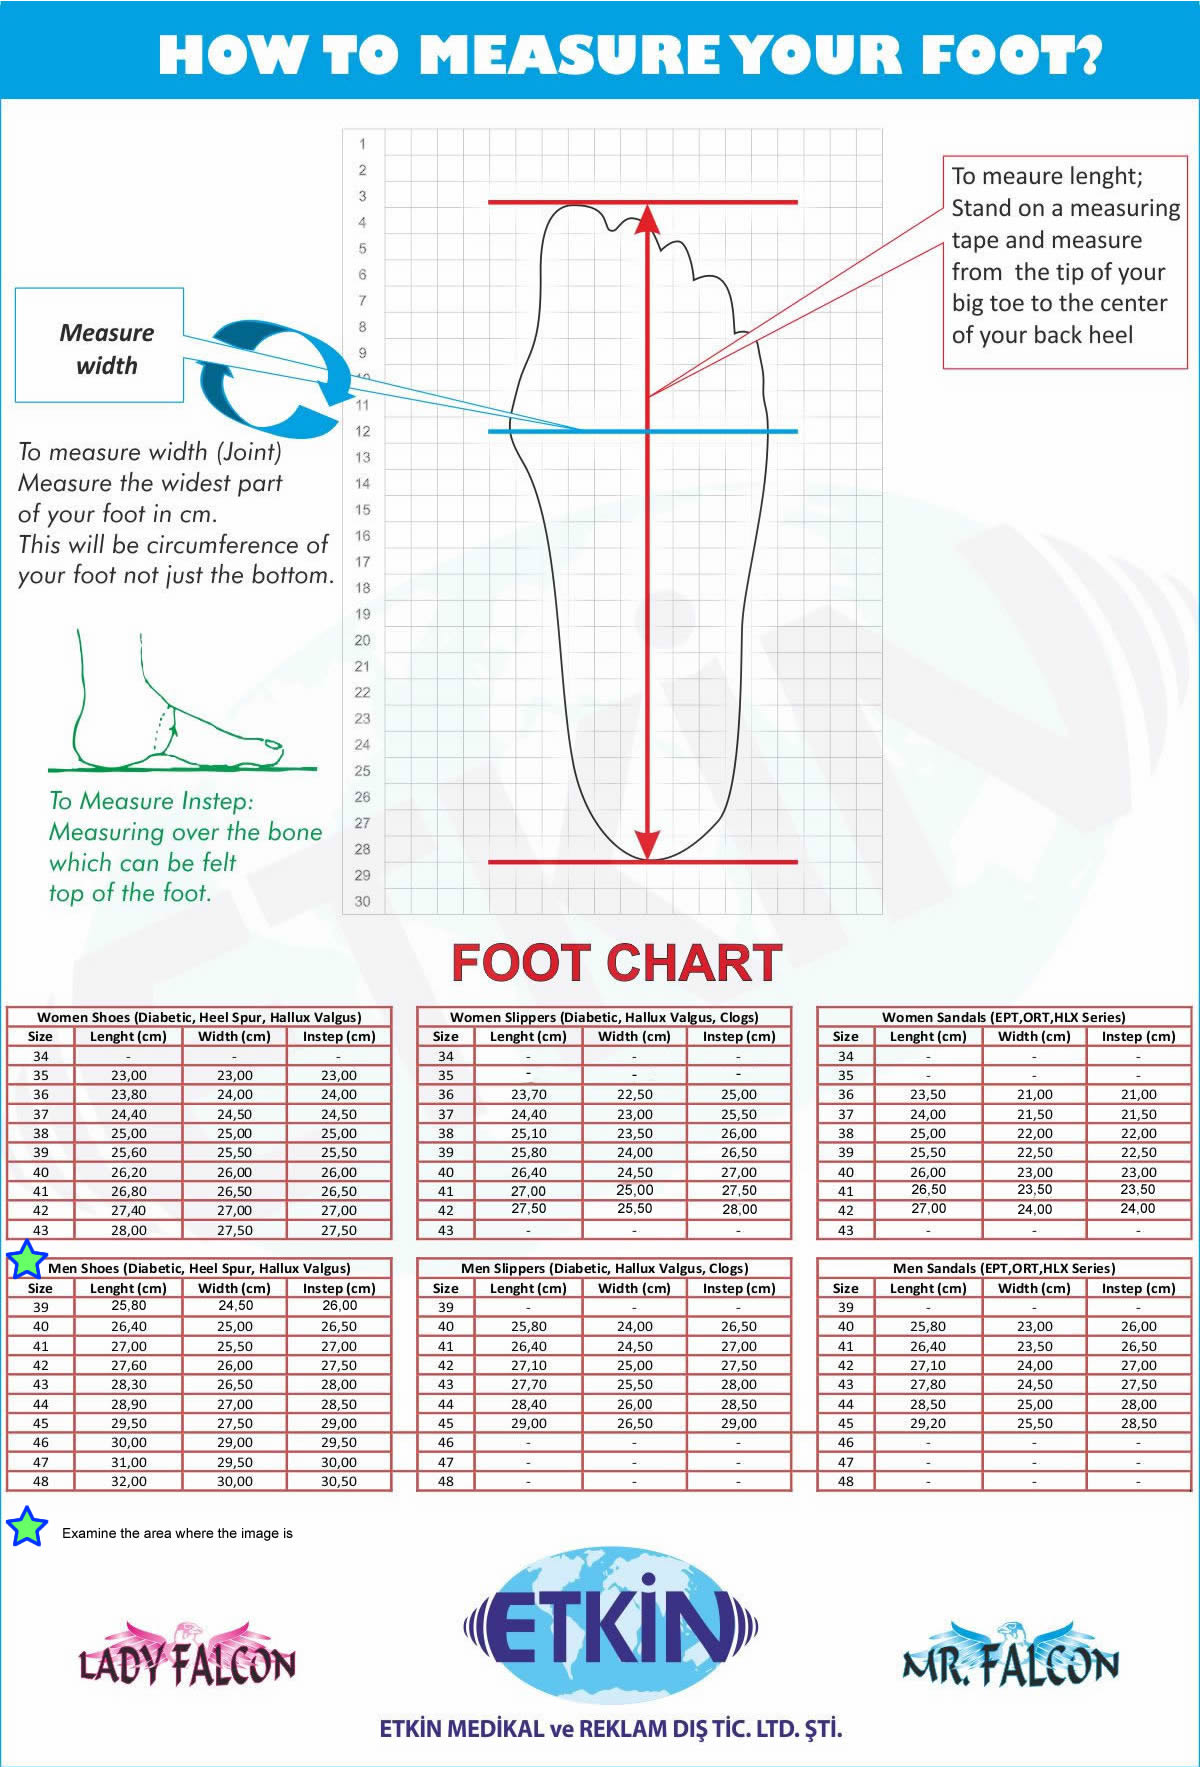 Mens shoes for diabetic patients chart